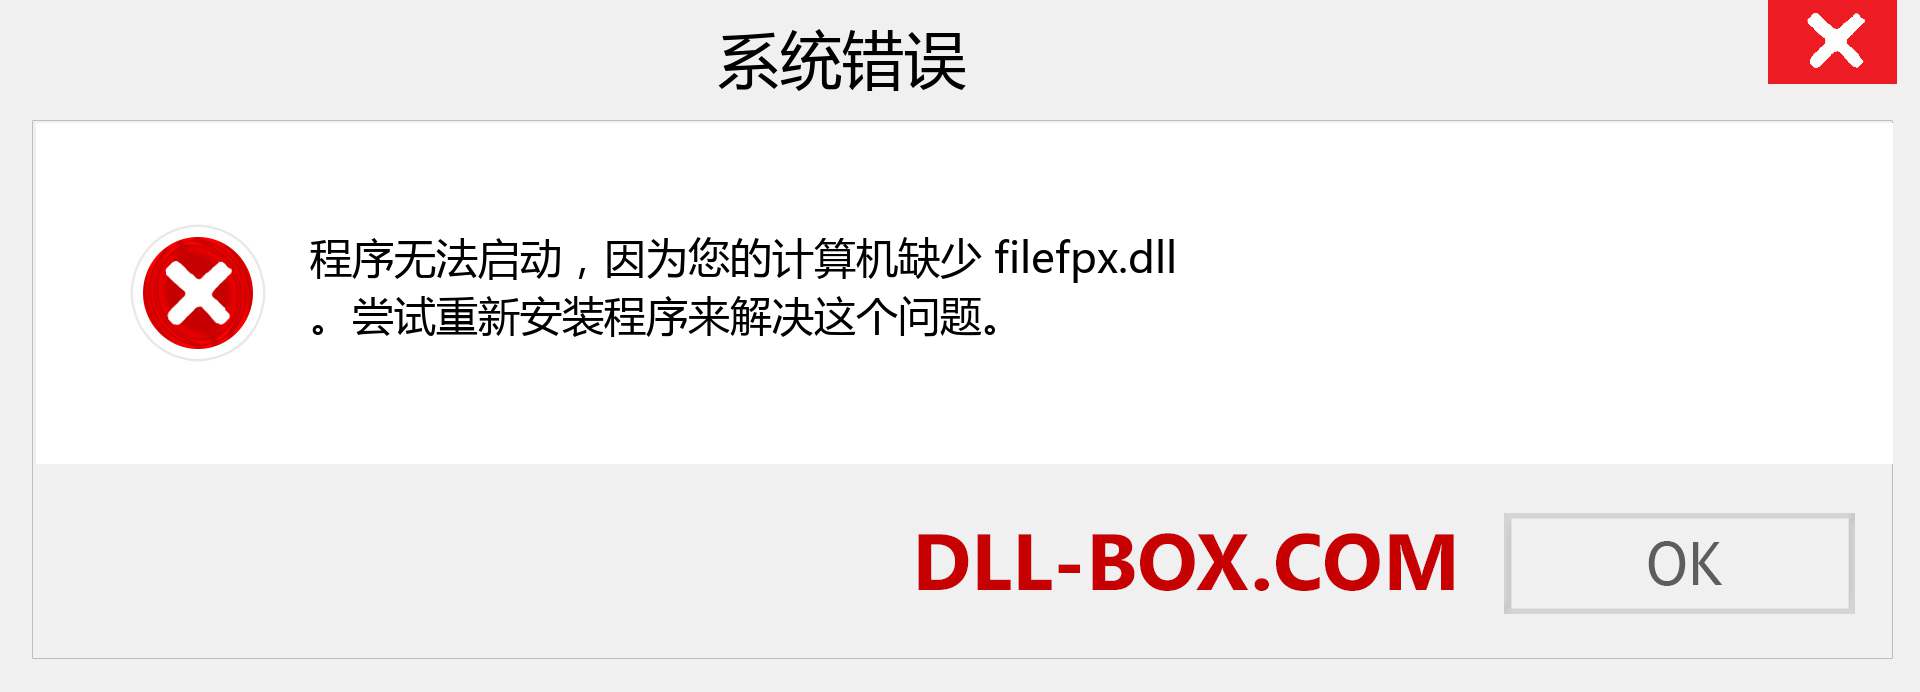 filefpx.dll 文件丢失？。 适用于 Windows 7、8、10 的下载 - 修复 Windows、照片、图像上的 filefpx dll 丢失错误